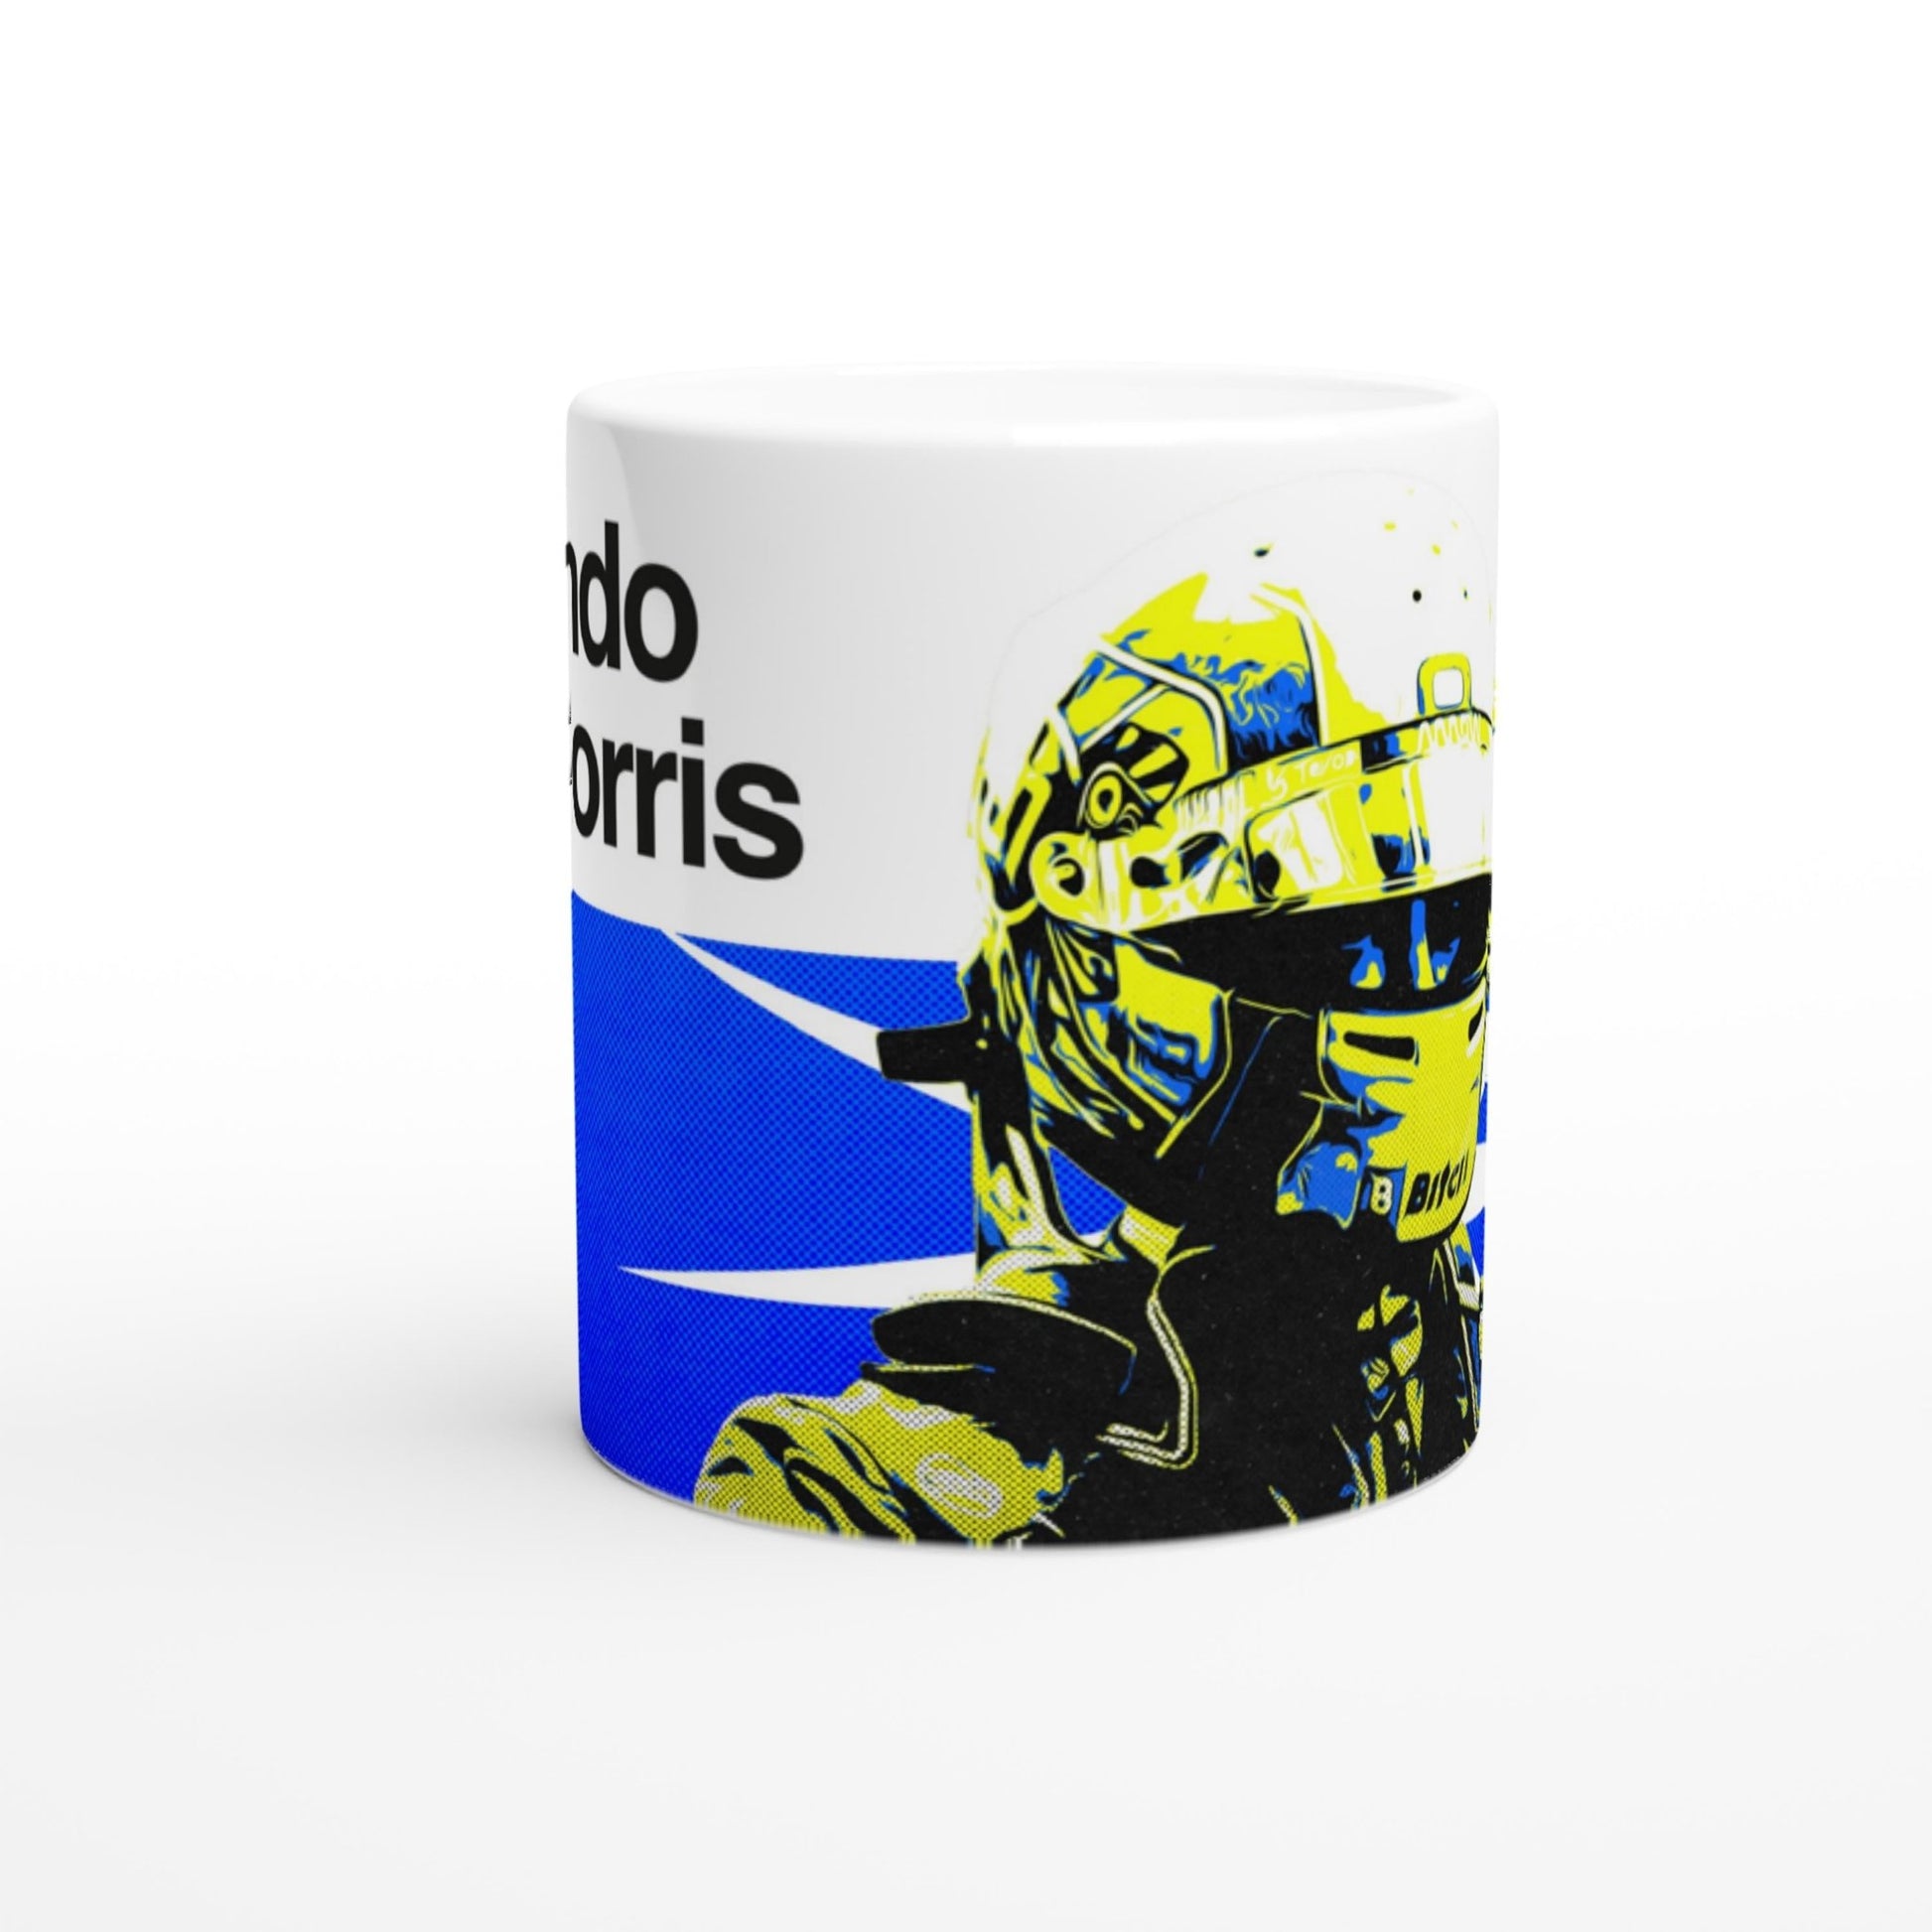 Lando Norris, Four - Formula 1 Mug